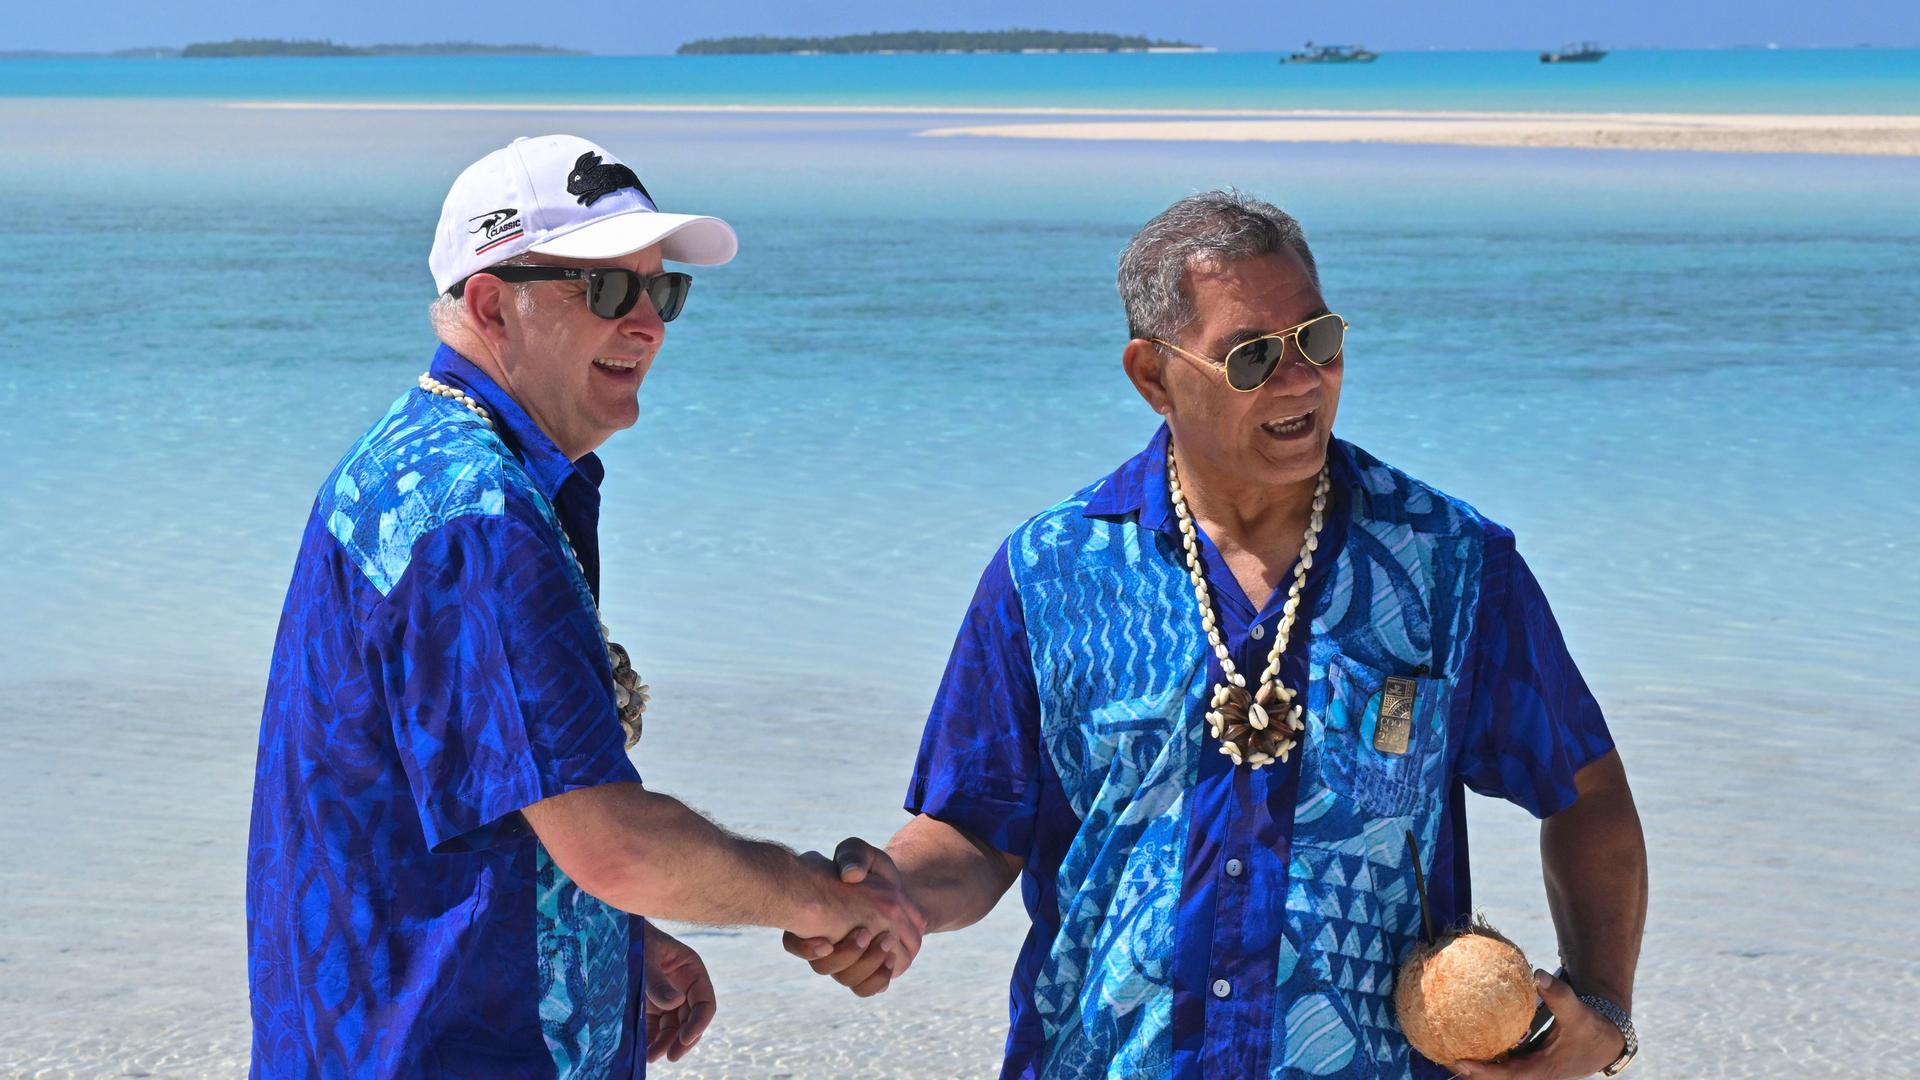 Cookinseln, Aitutaki: Anthony Albanese (l), Premierminister von Australien, und Kausea Natano, Premierminister von Tuvalu, schütteln sich auf One Foot Island die Hände, nachdem sie an der Klausurtagung der Staats- und Regierungschefs während des Pazifik-Insel-Forums in Aitutaki, Cookinseln, teilgenommen haben.